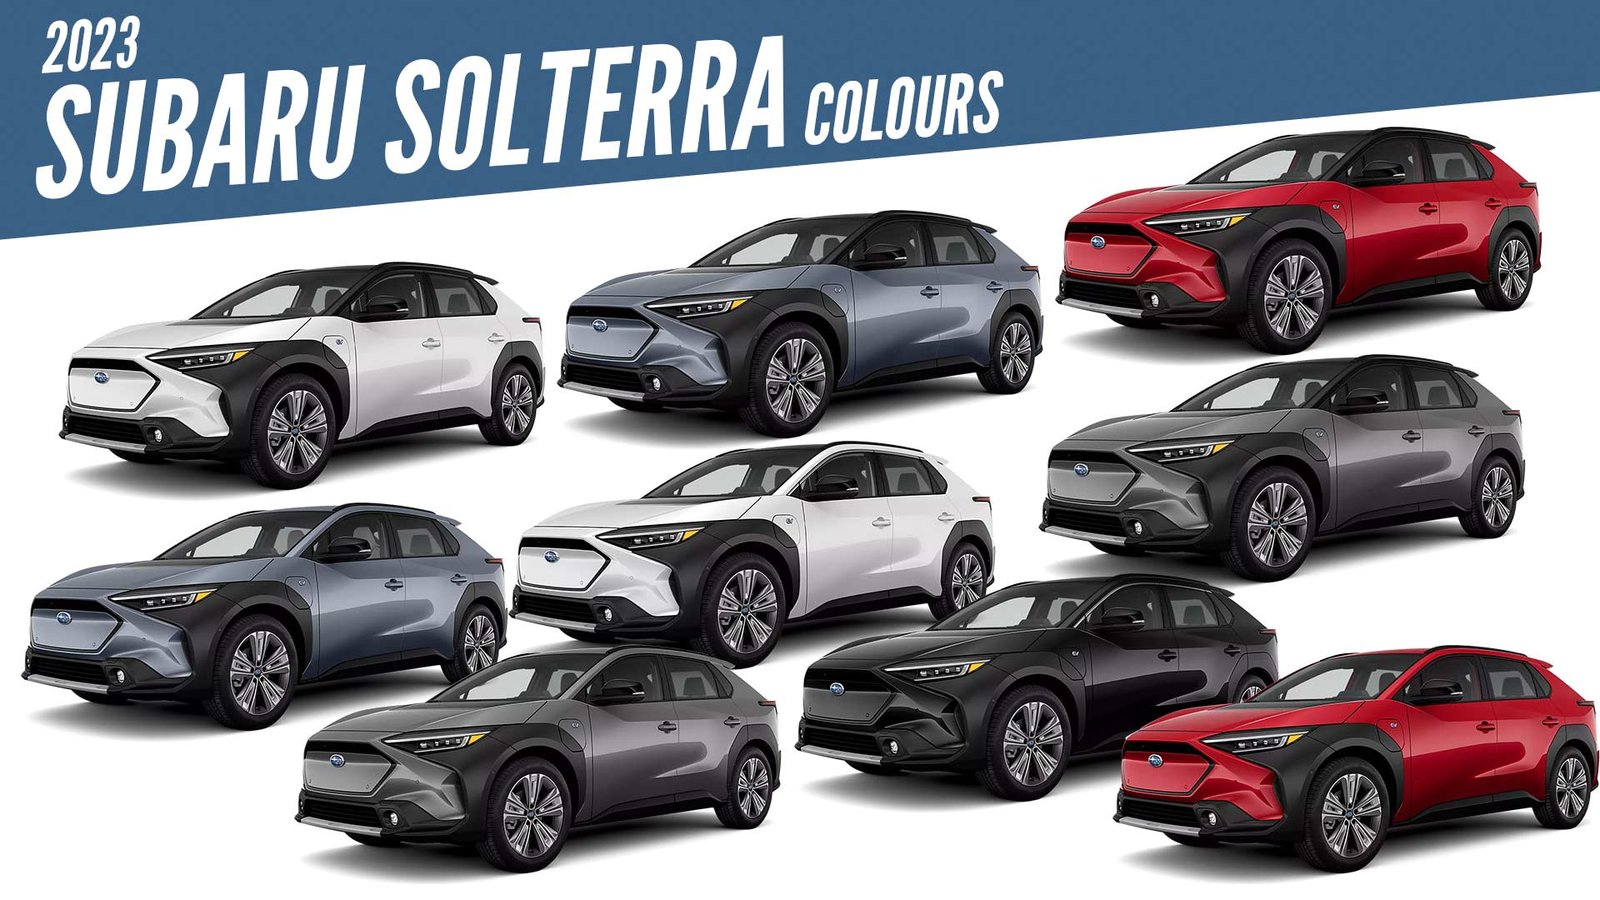 2023 Subaru Solterra All Color Options Images AUTOBICS